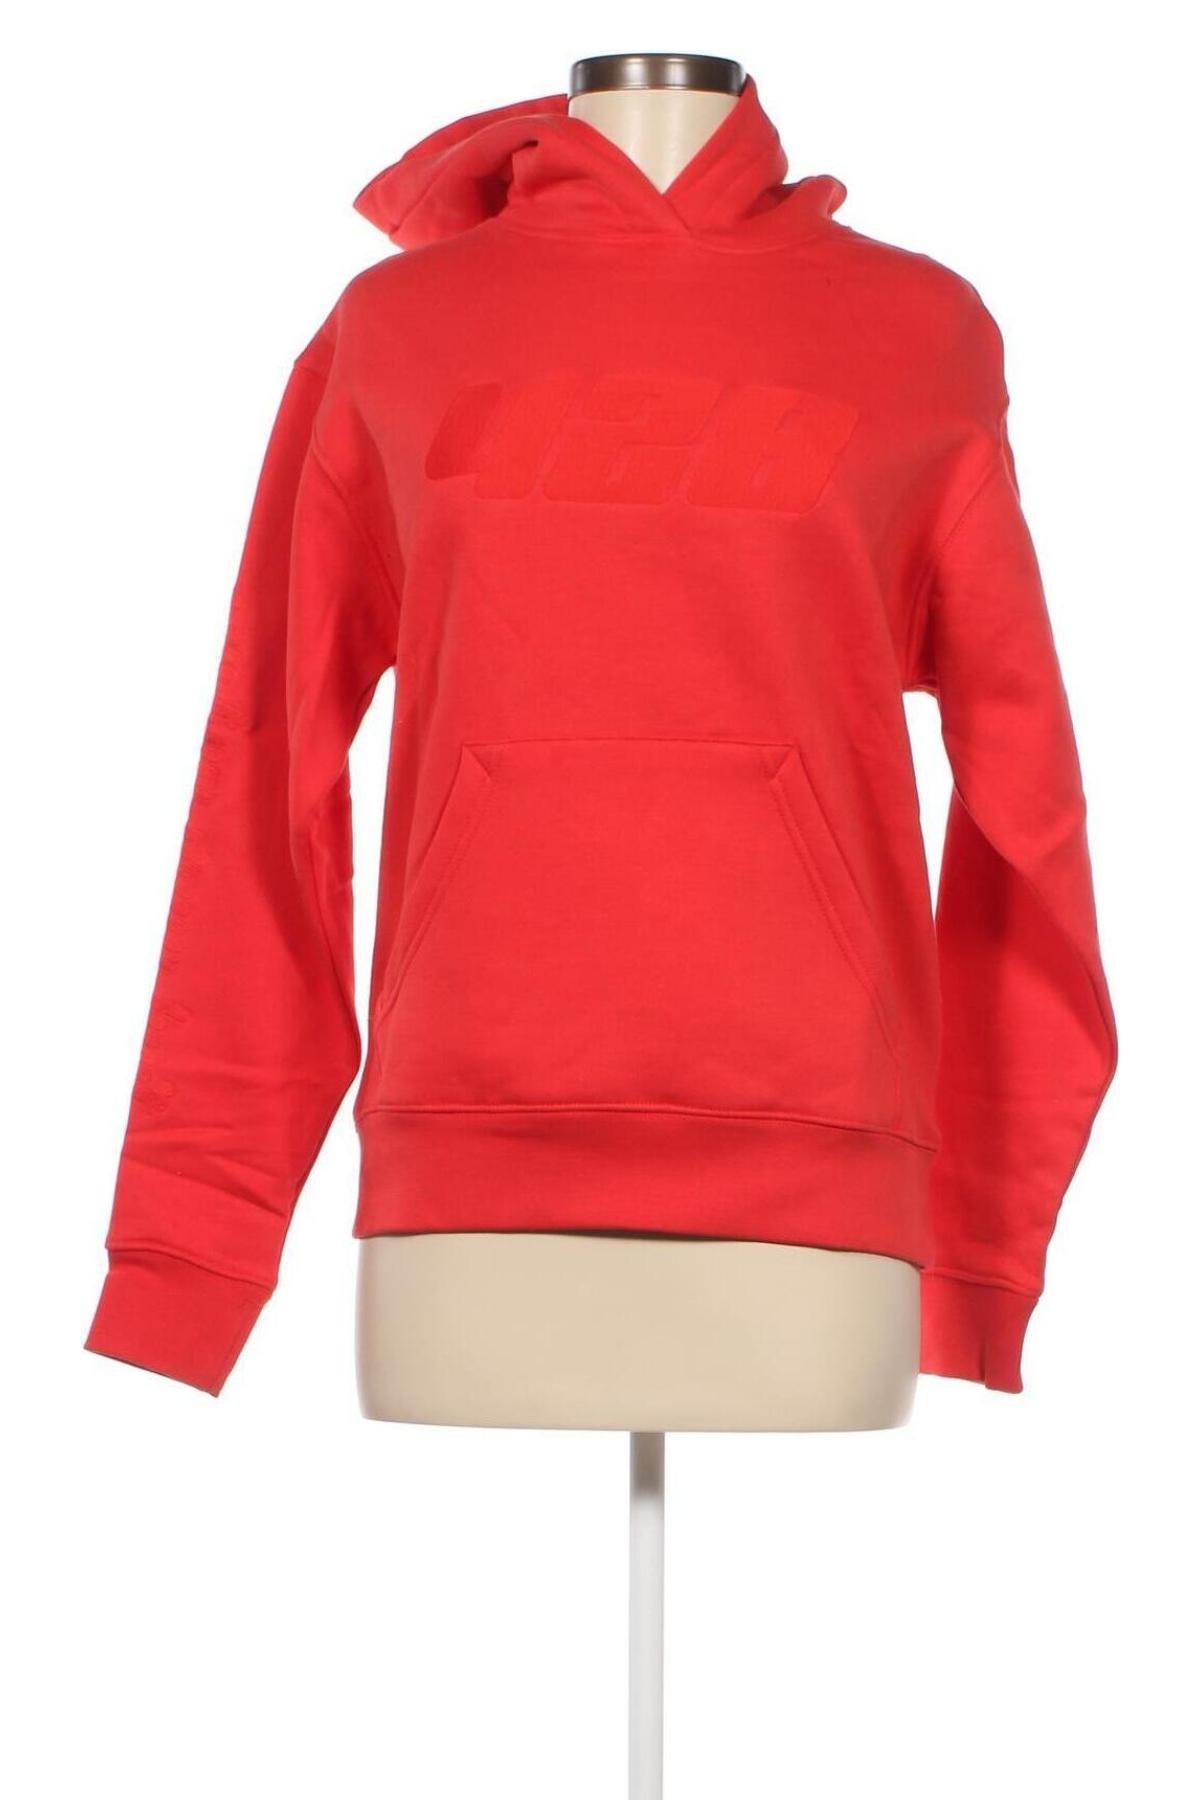 Γυναικείο φούτερ ABOUT YOU x Mero, Μέγεθος XS, Χρώμα Πορτοκαλί, Βαμβάκι, Τιμή 20,17 €